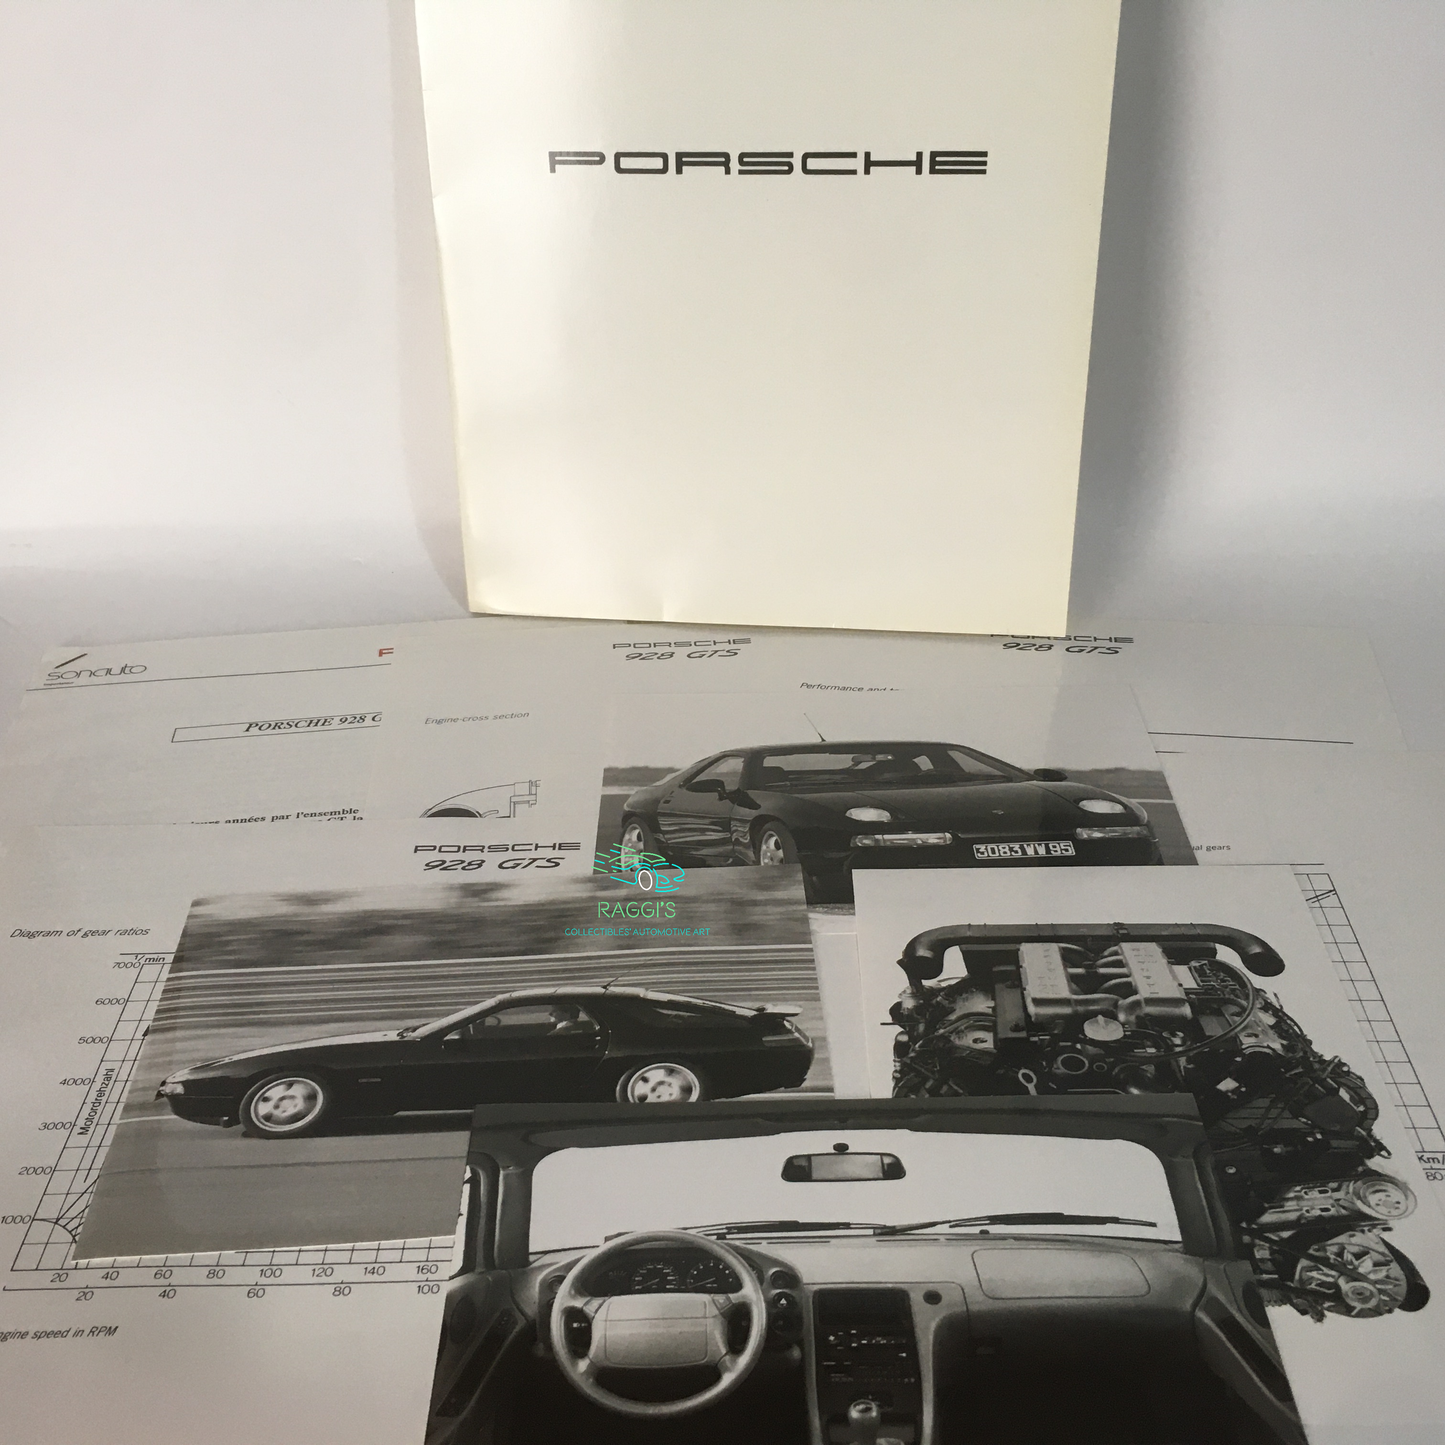 Porsche, press kit Porsche 928 GTS composto da comunicato stampa, 4 schede tecniche e 4 fotografie in bianche e nero originali e dell'epoca.